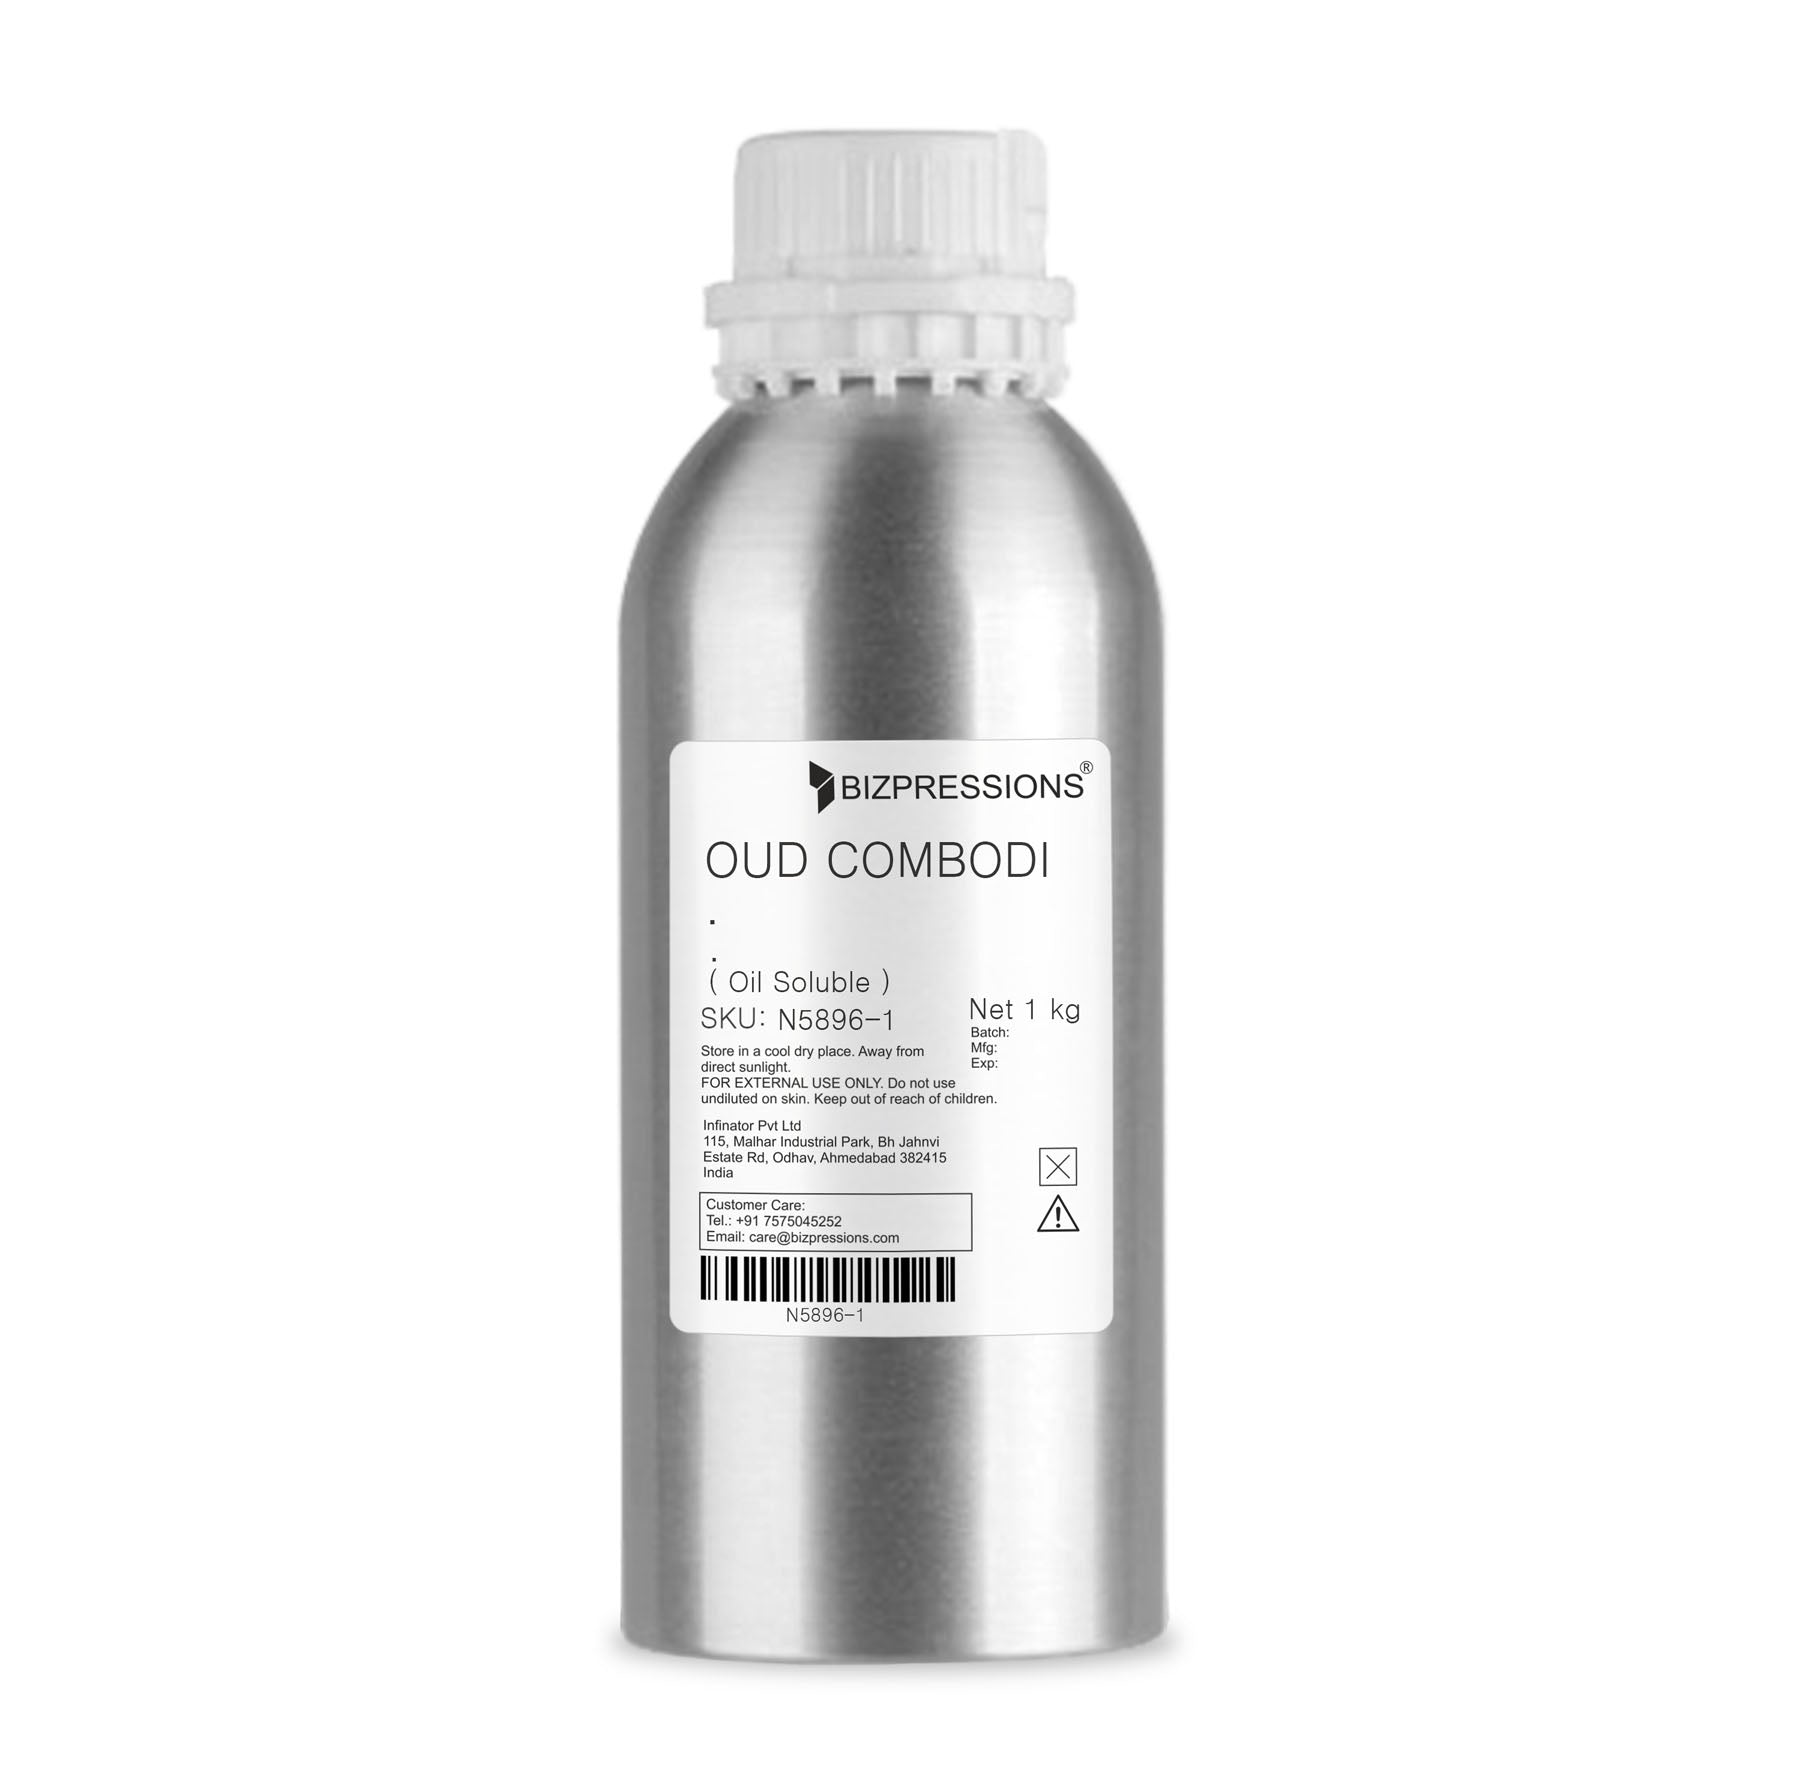 OUD COMBODI - Fragrance ( Oil Soluble ) - 1 kg